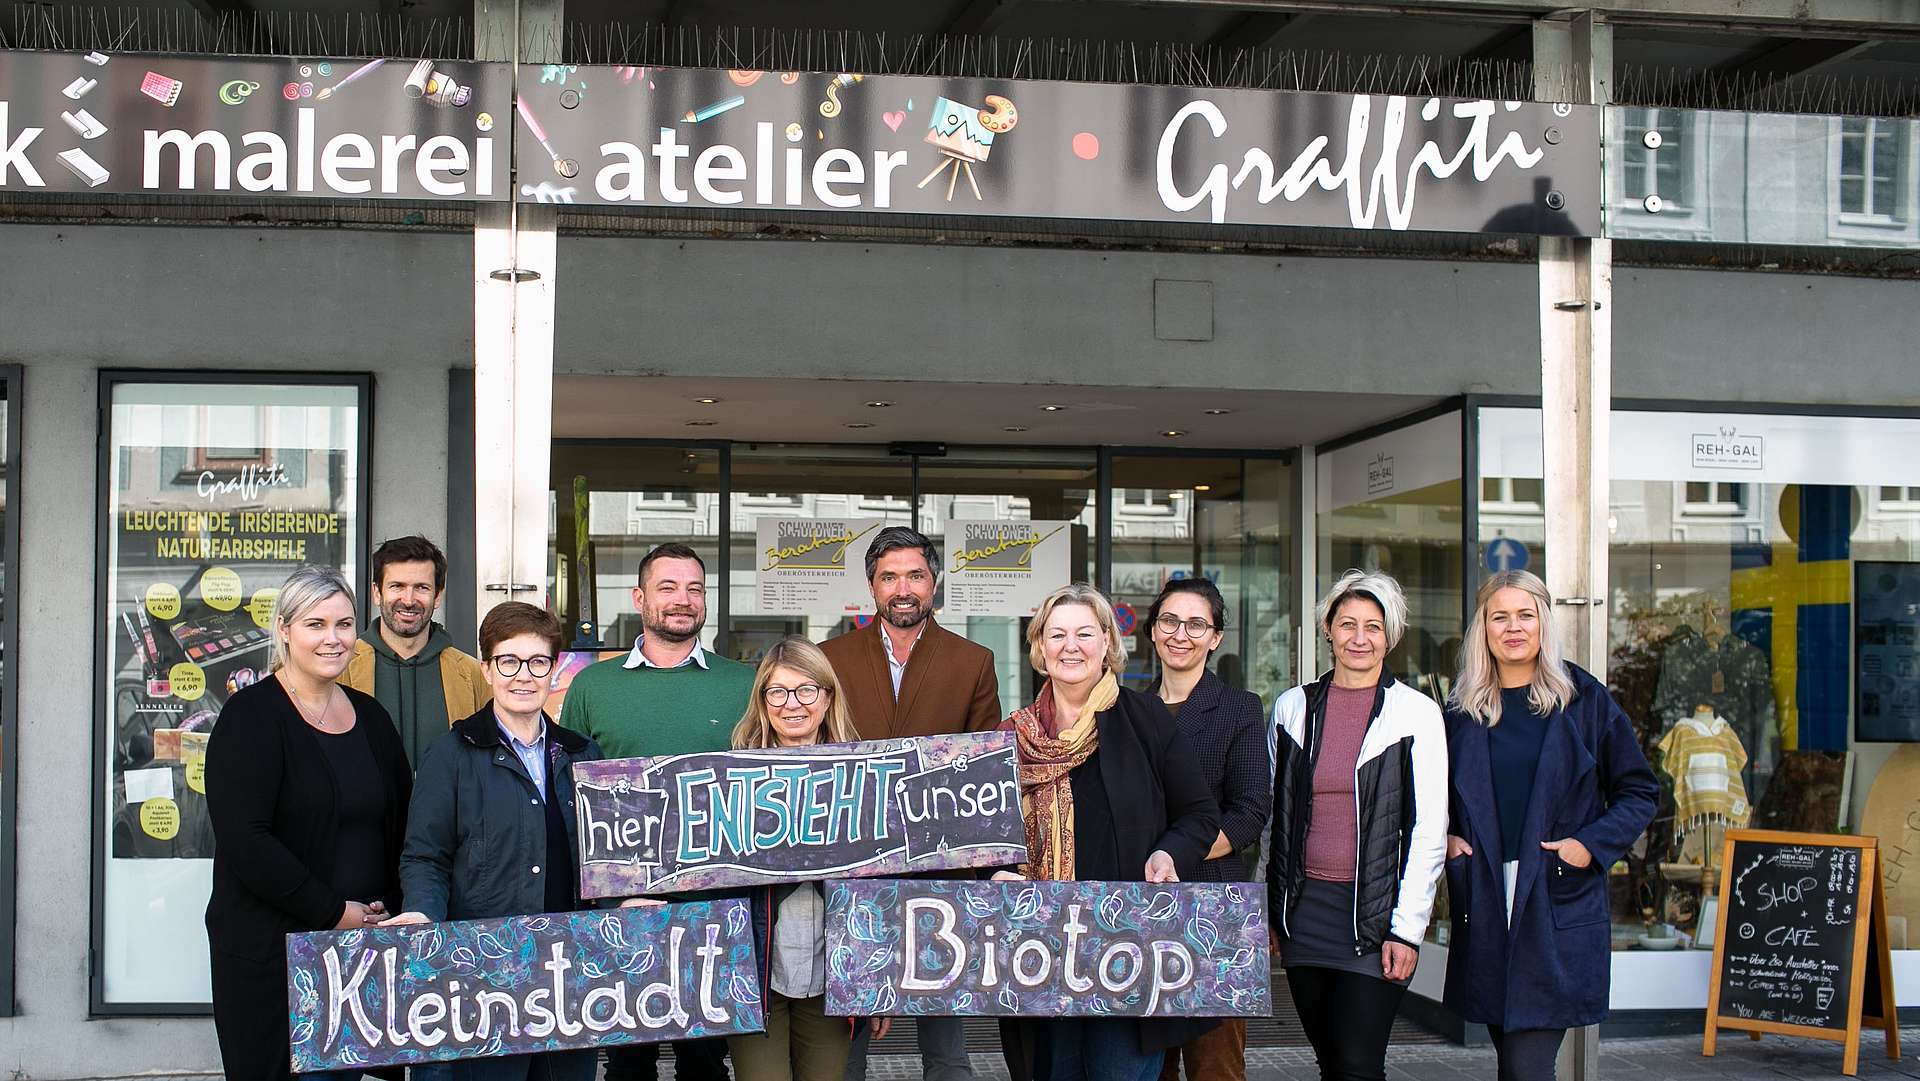 Gruppenfoto mit 10 Personen, mit einem Schild mit der Aufschrift "Hier entsteht unser Kleinstadt-Biotop"